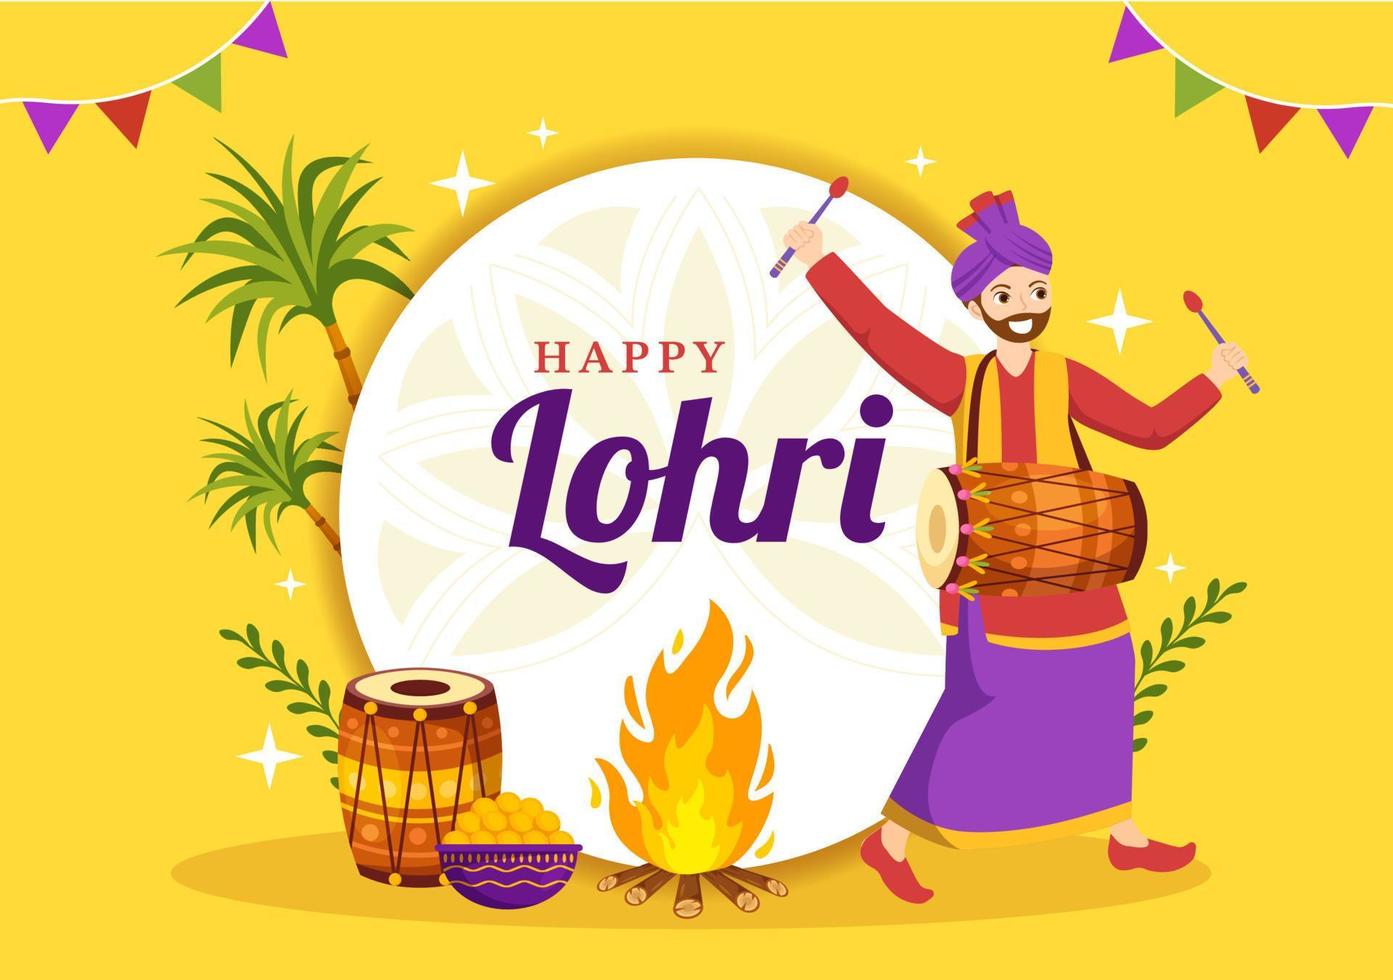 contento lohri festival de Punjab India ilustración con jugando danza y celebracion hoguera en plano dibujos animados mano dibujado para aterrizaje página plantillas vector